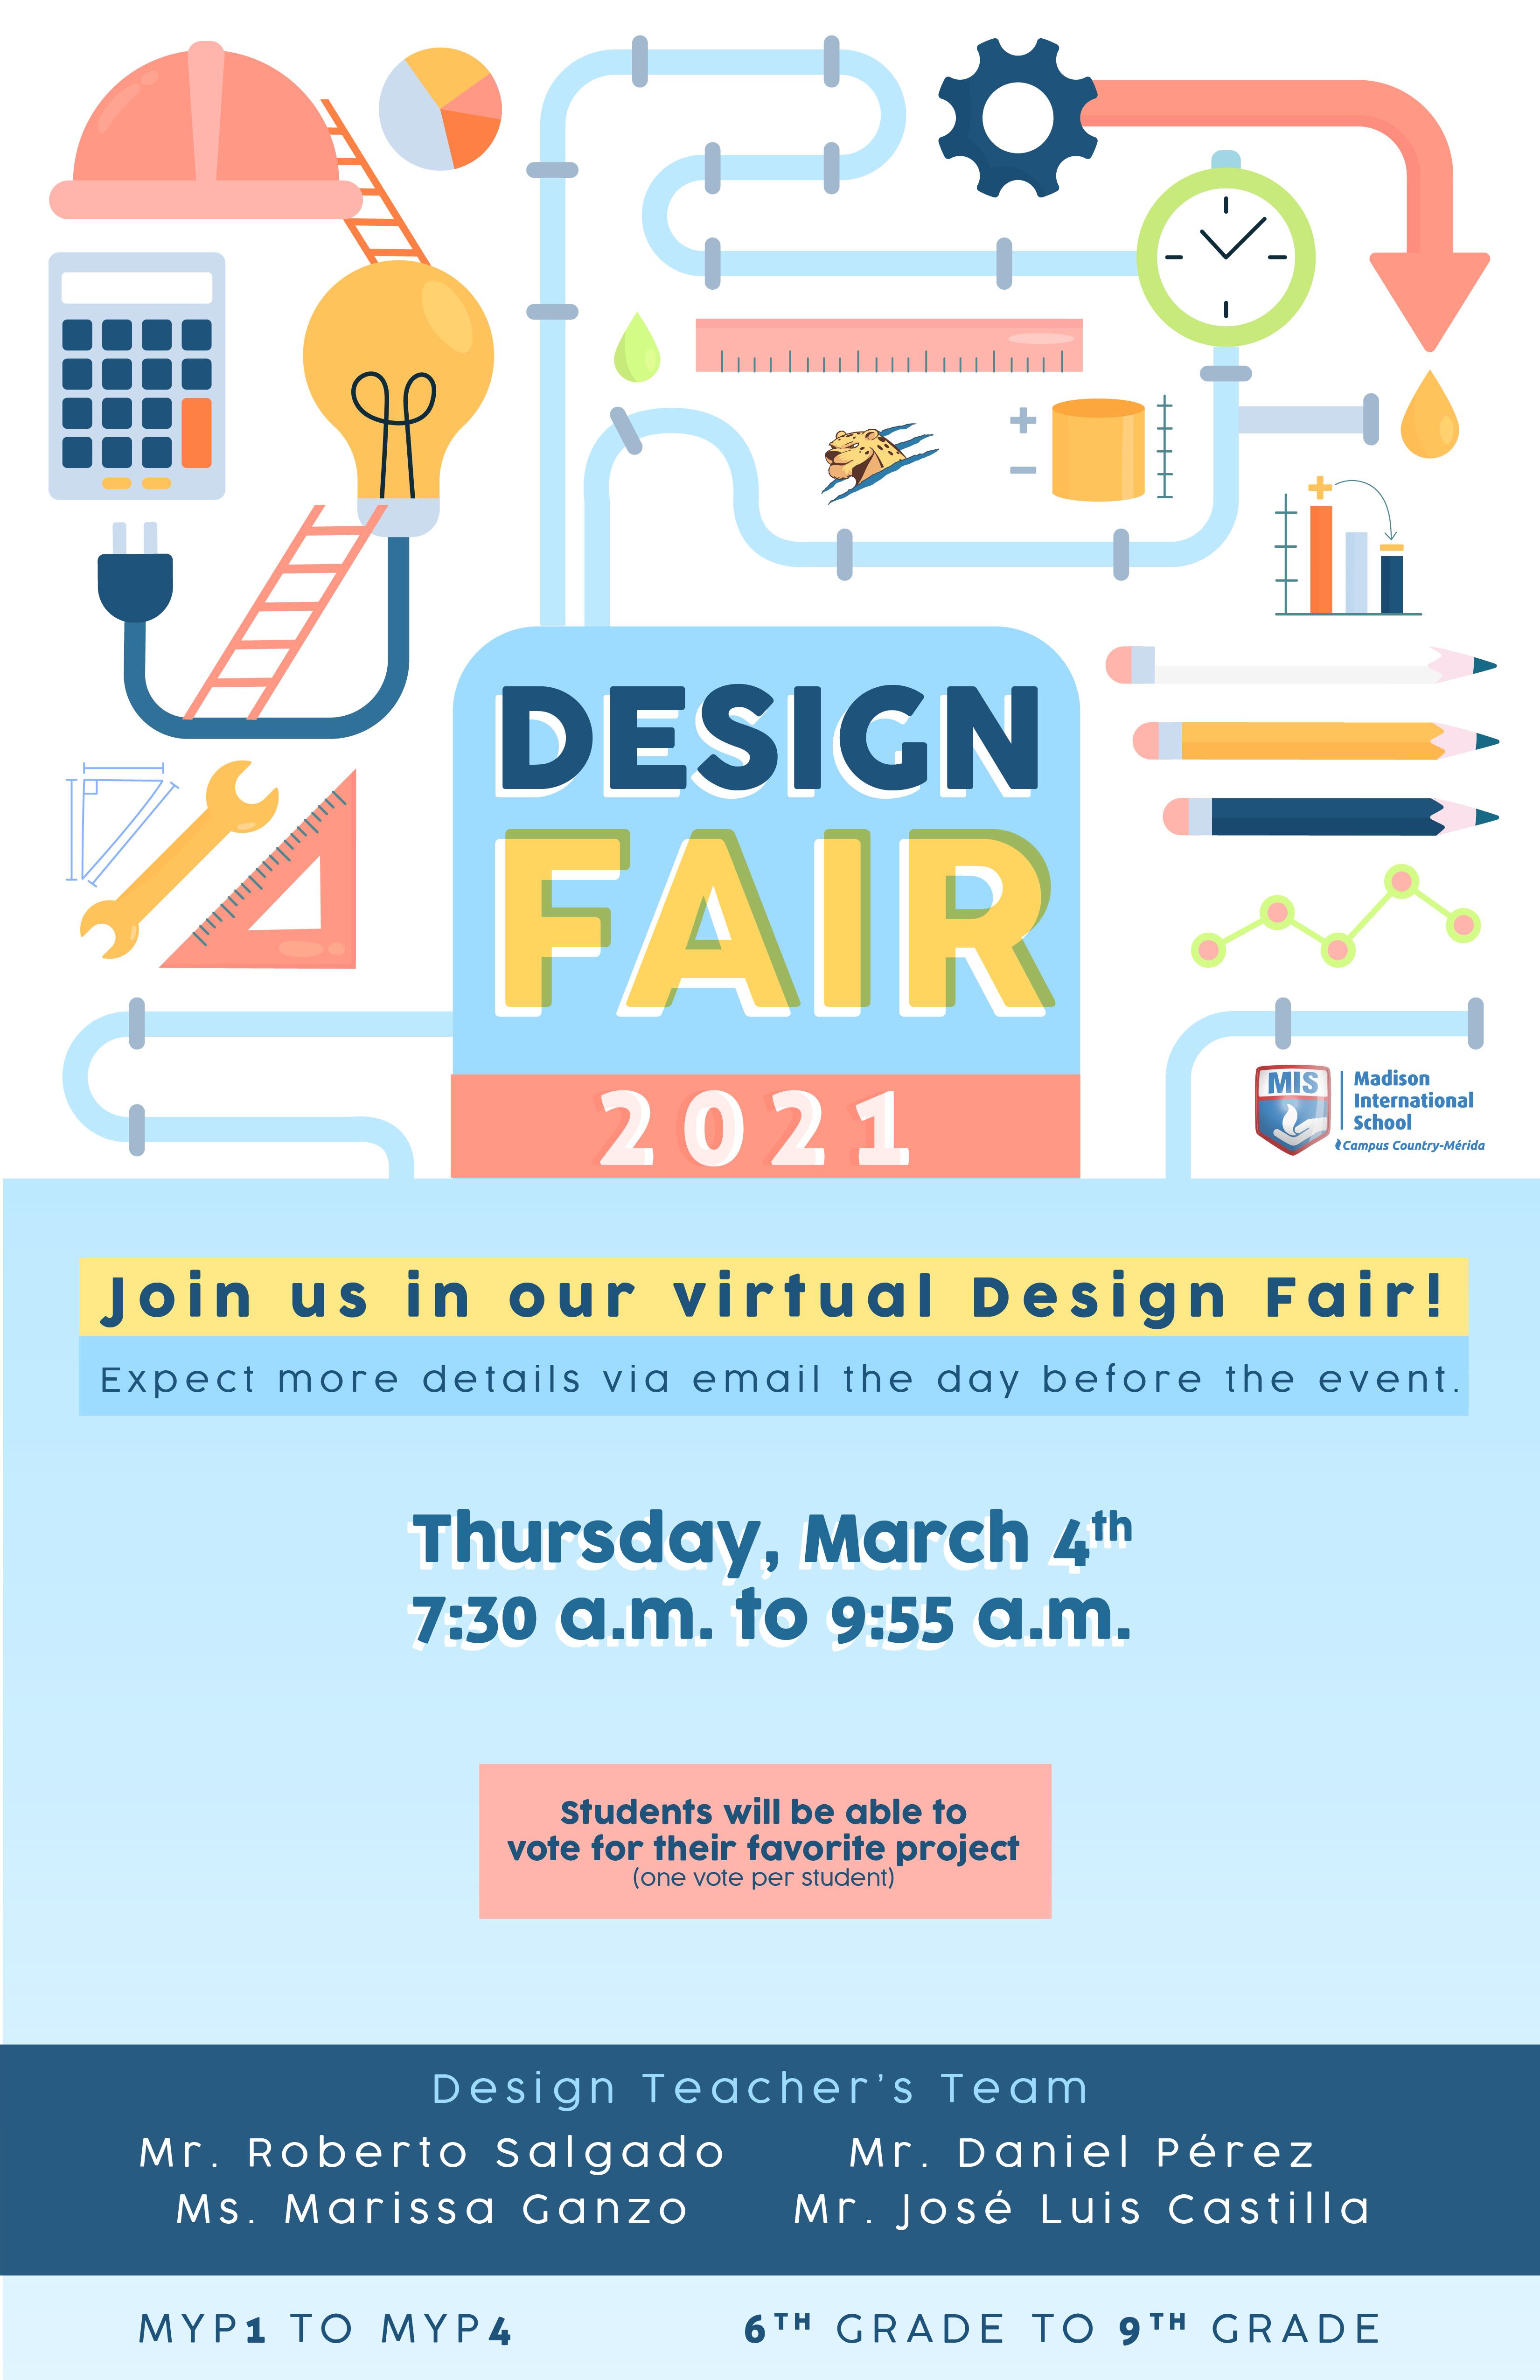 Design fair